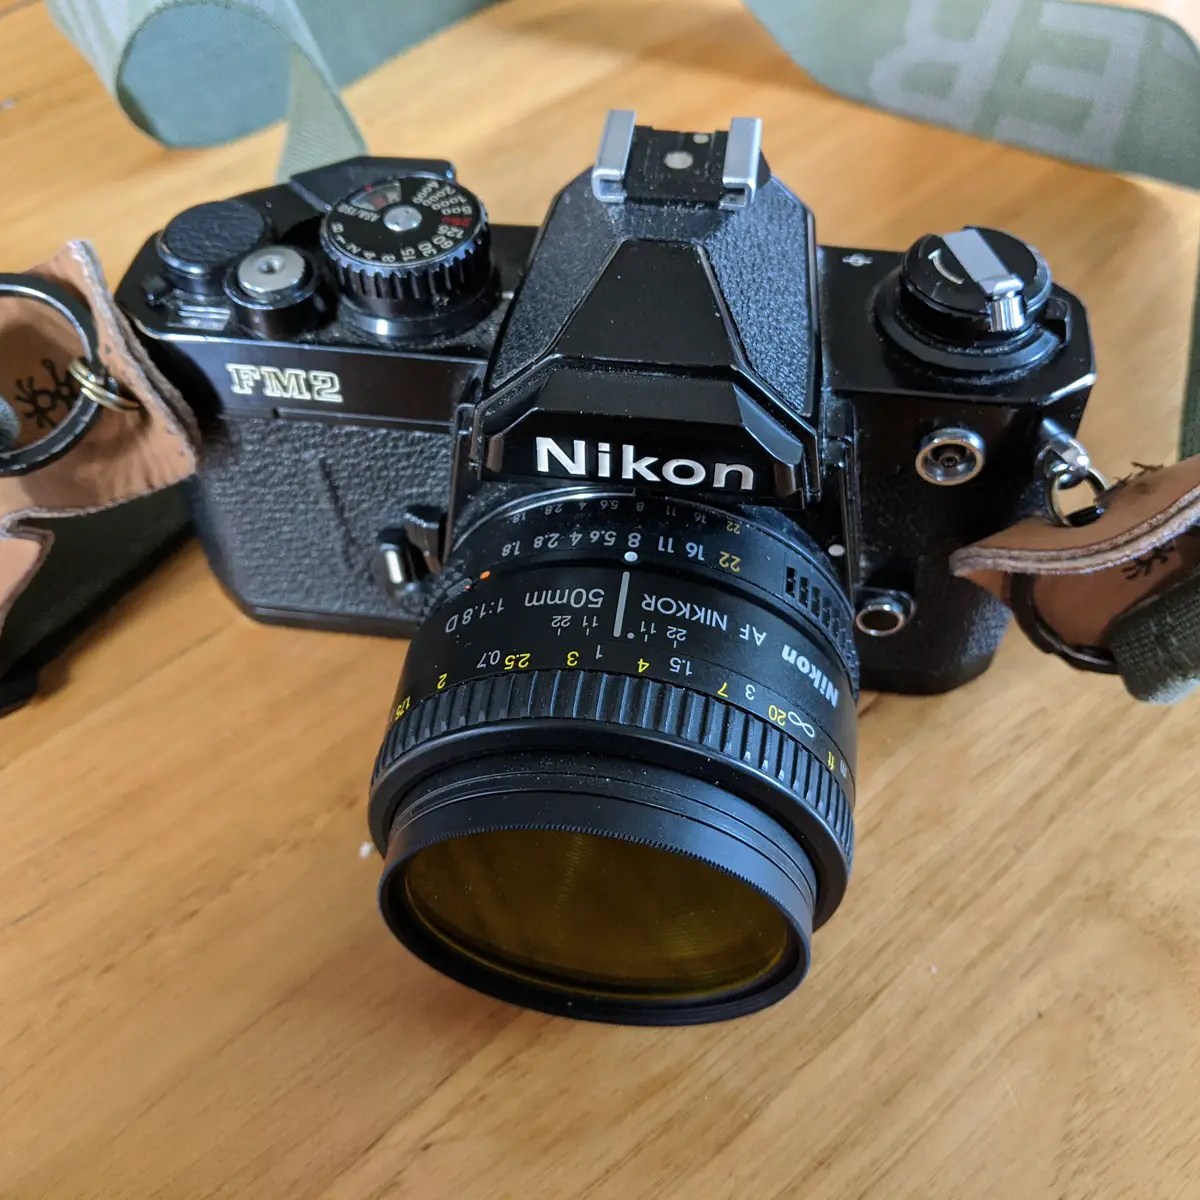 My Nikon FM2n and Nikkor 50mm f/1.8 AF-D